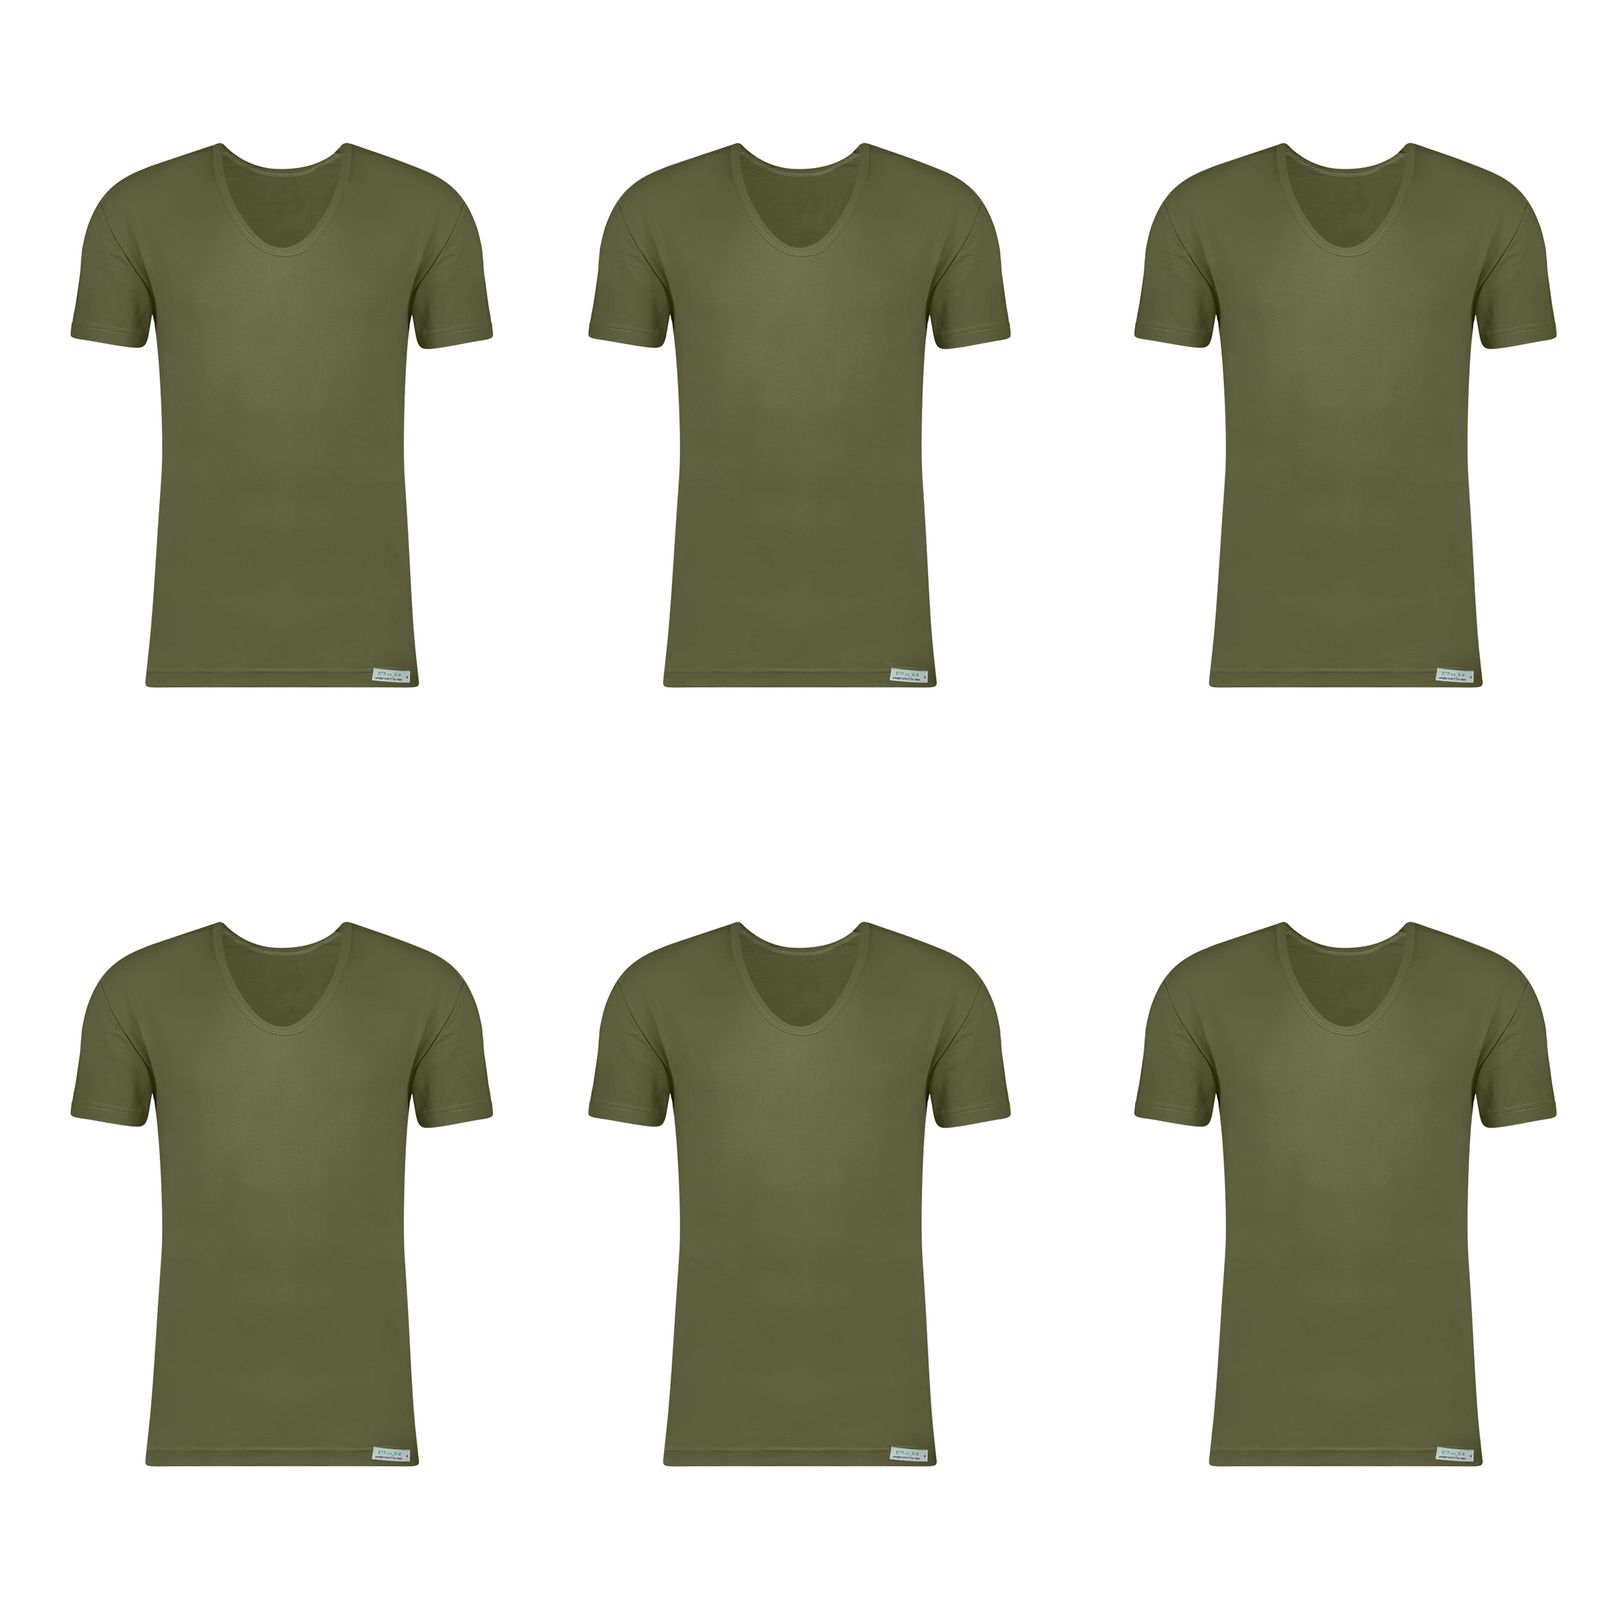 زیرپوش آستین دار مردانه برهان تن پوش مدل 6-02 بسته 6 عددی رنگ سبز